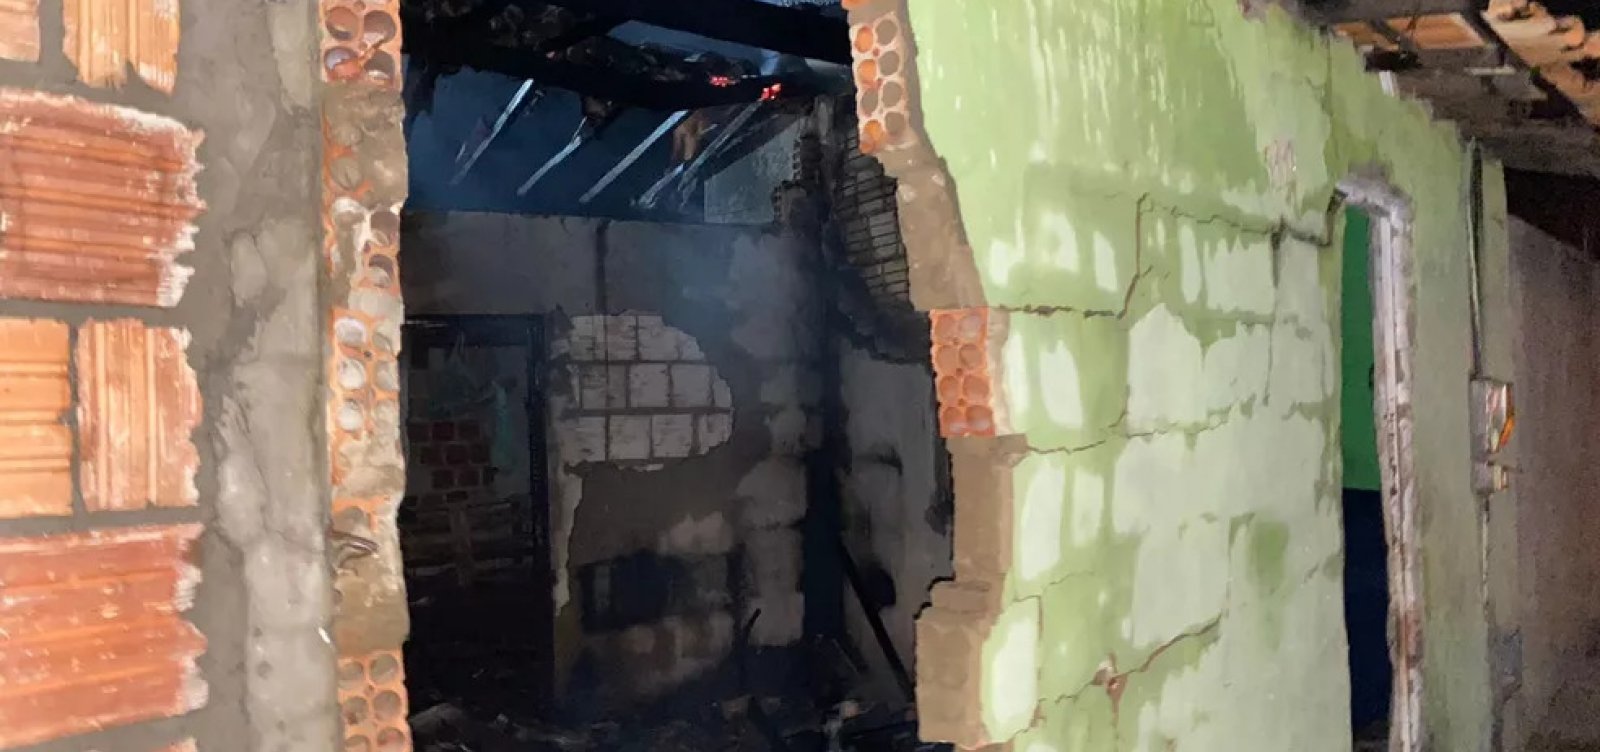 Criança de nove anos morre em incêndio no oeste da Bahia 